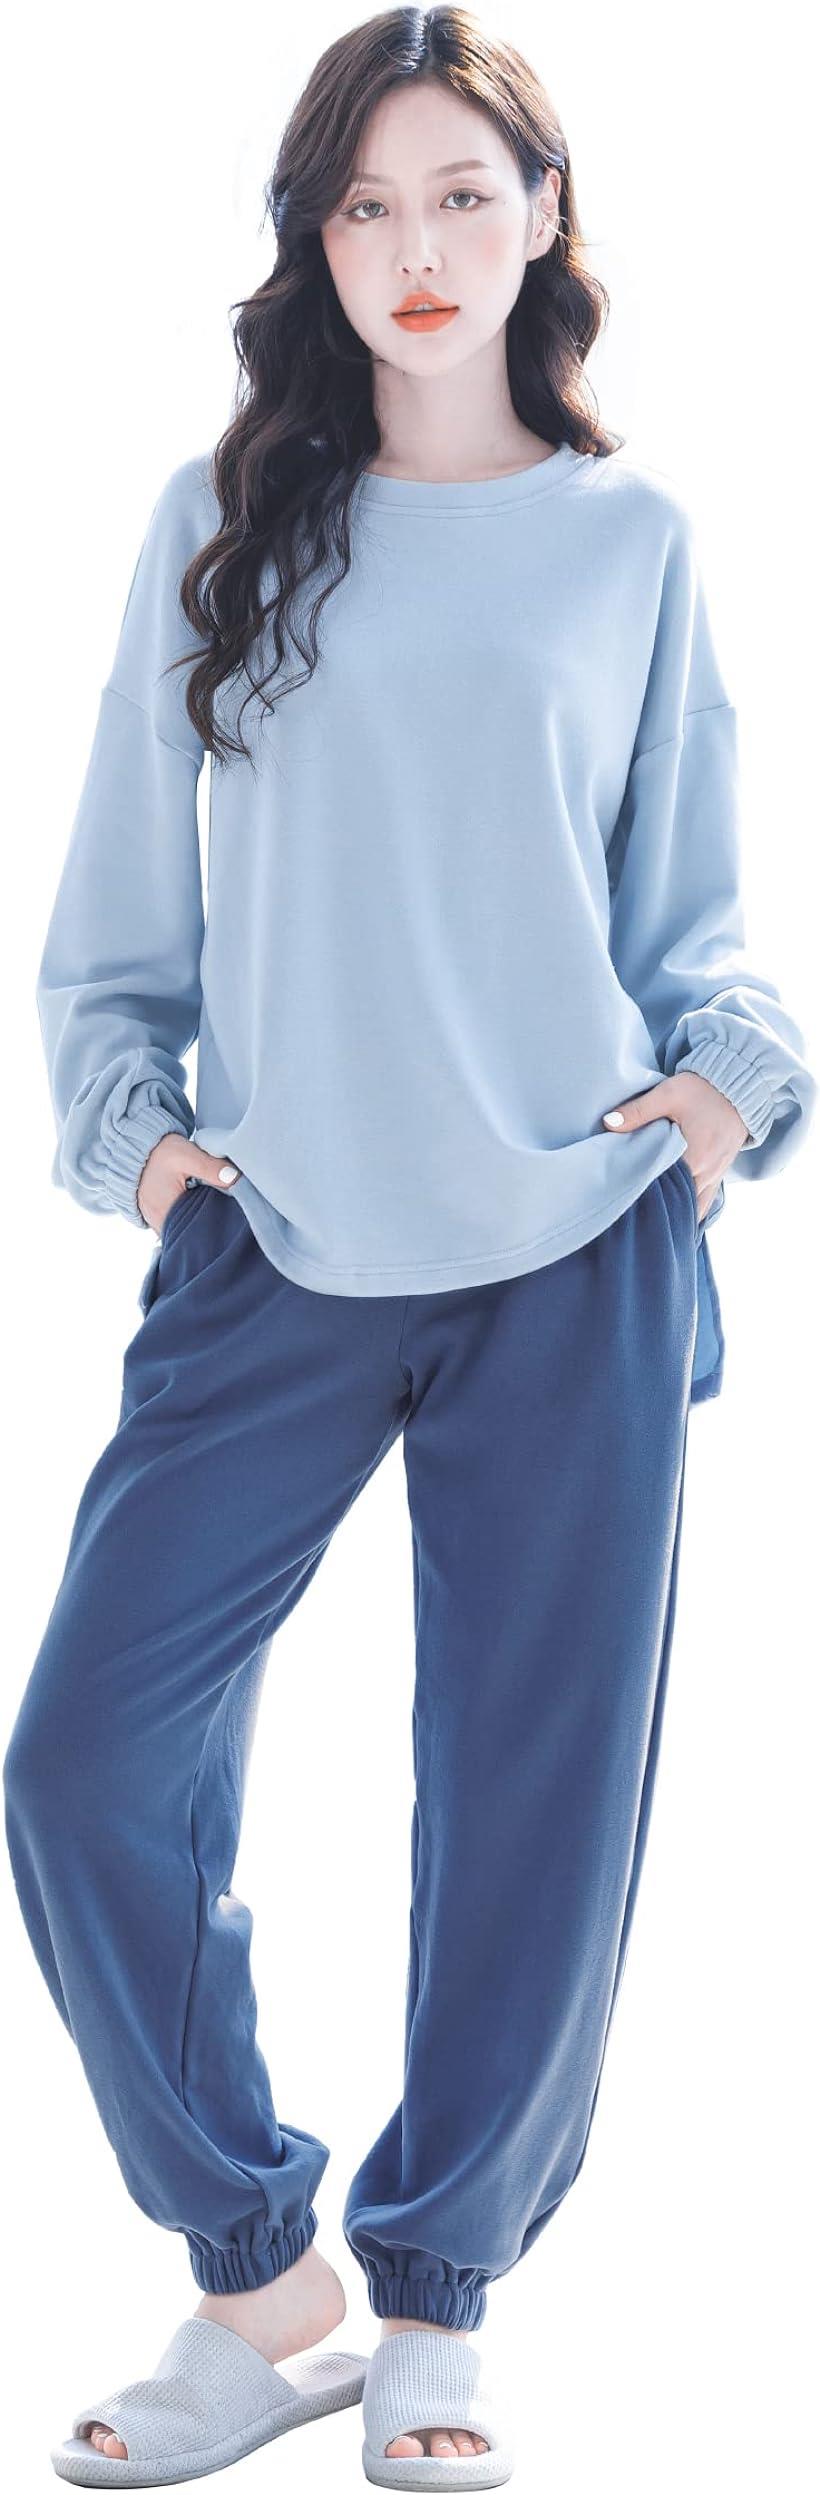 母の日 ルームウェア パジャマ 部屋着 レディース 上下セット 長袖 暖かい 可愛い(ブルー M)